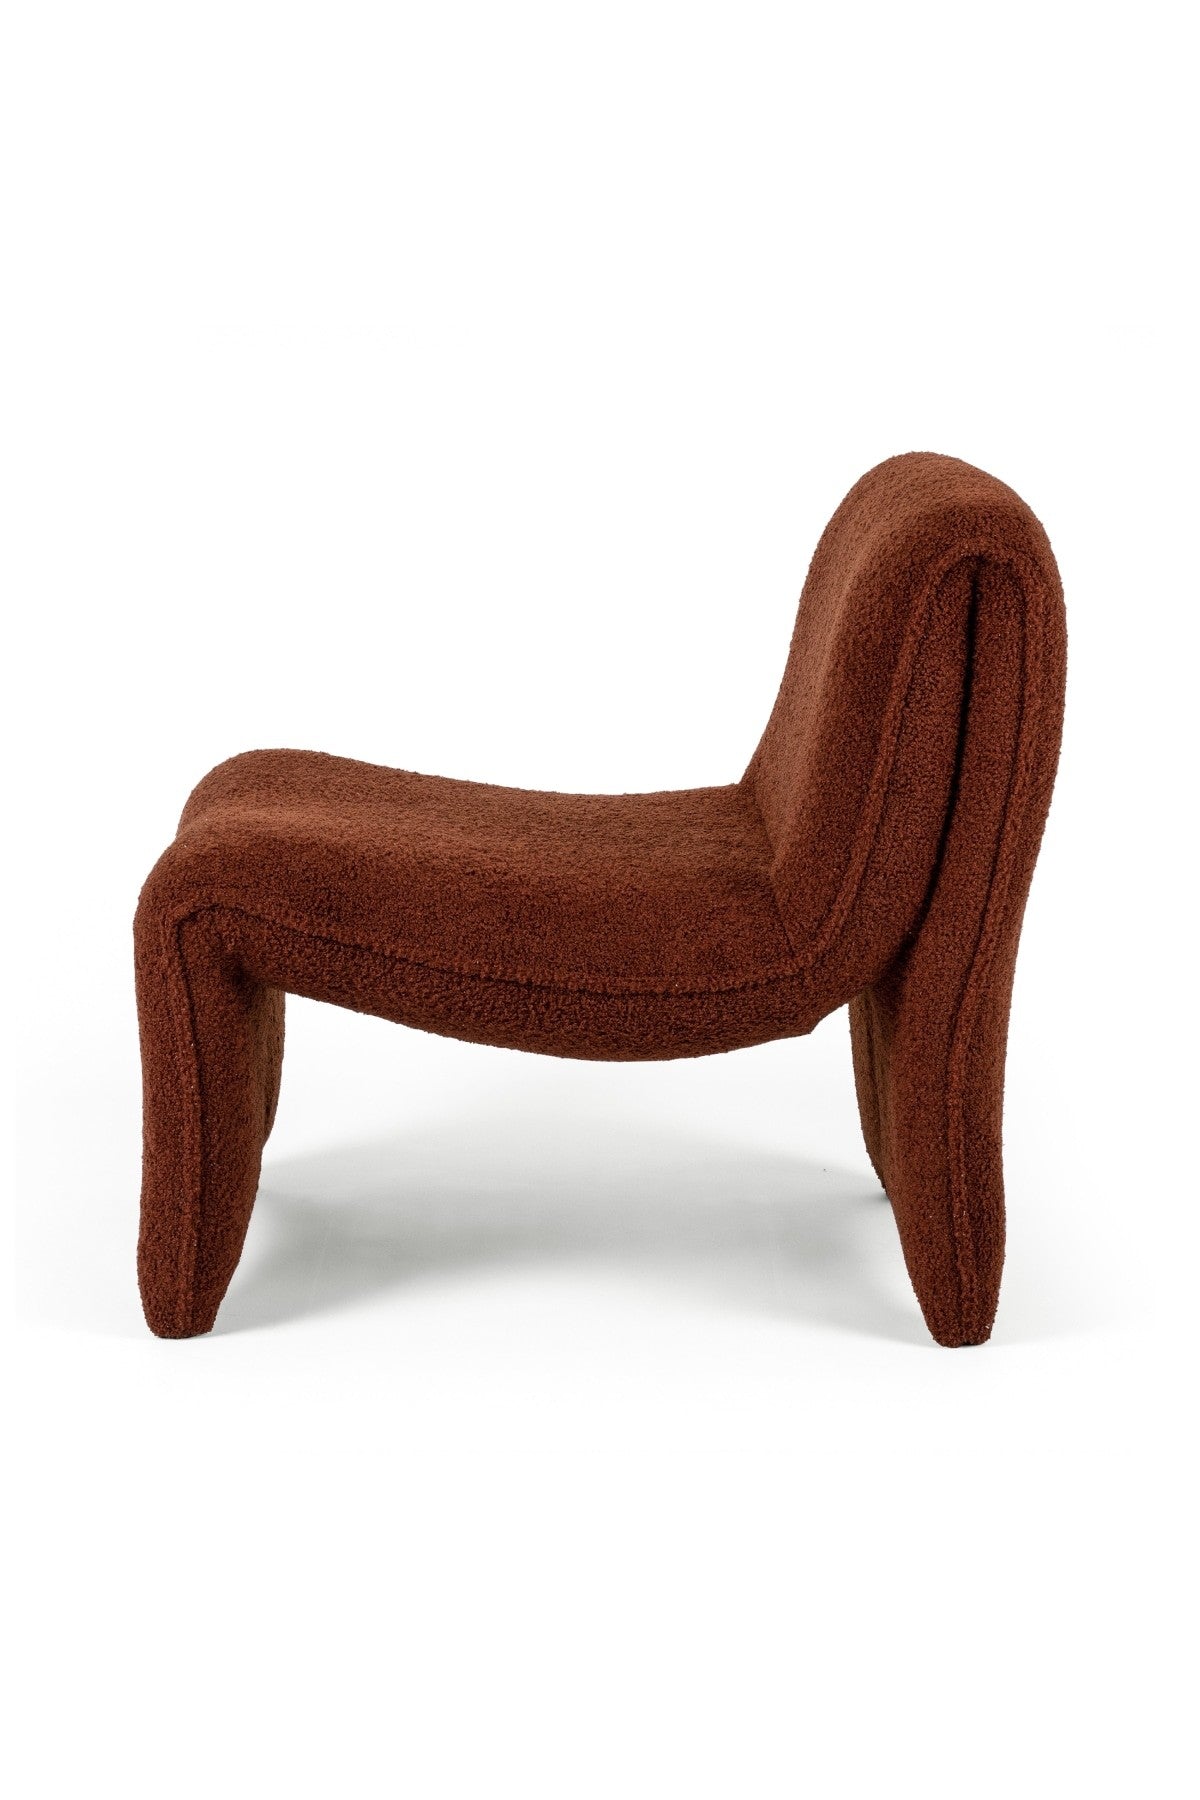 Annette Chair - 3 Colors